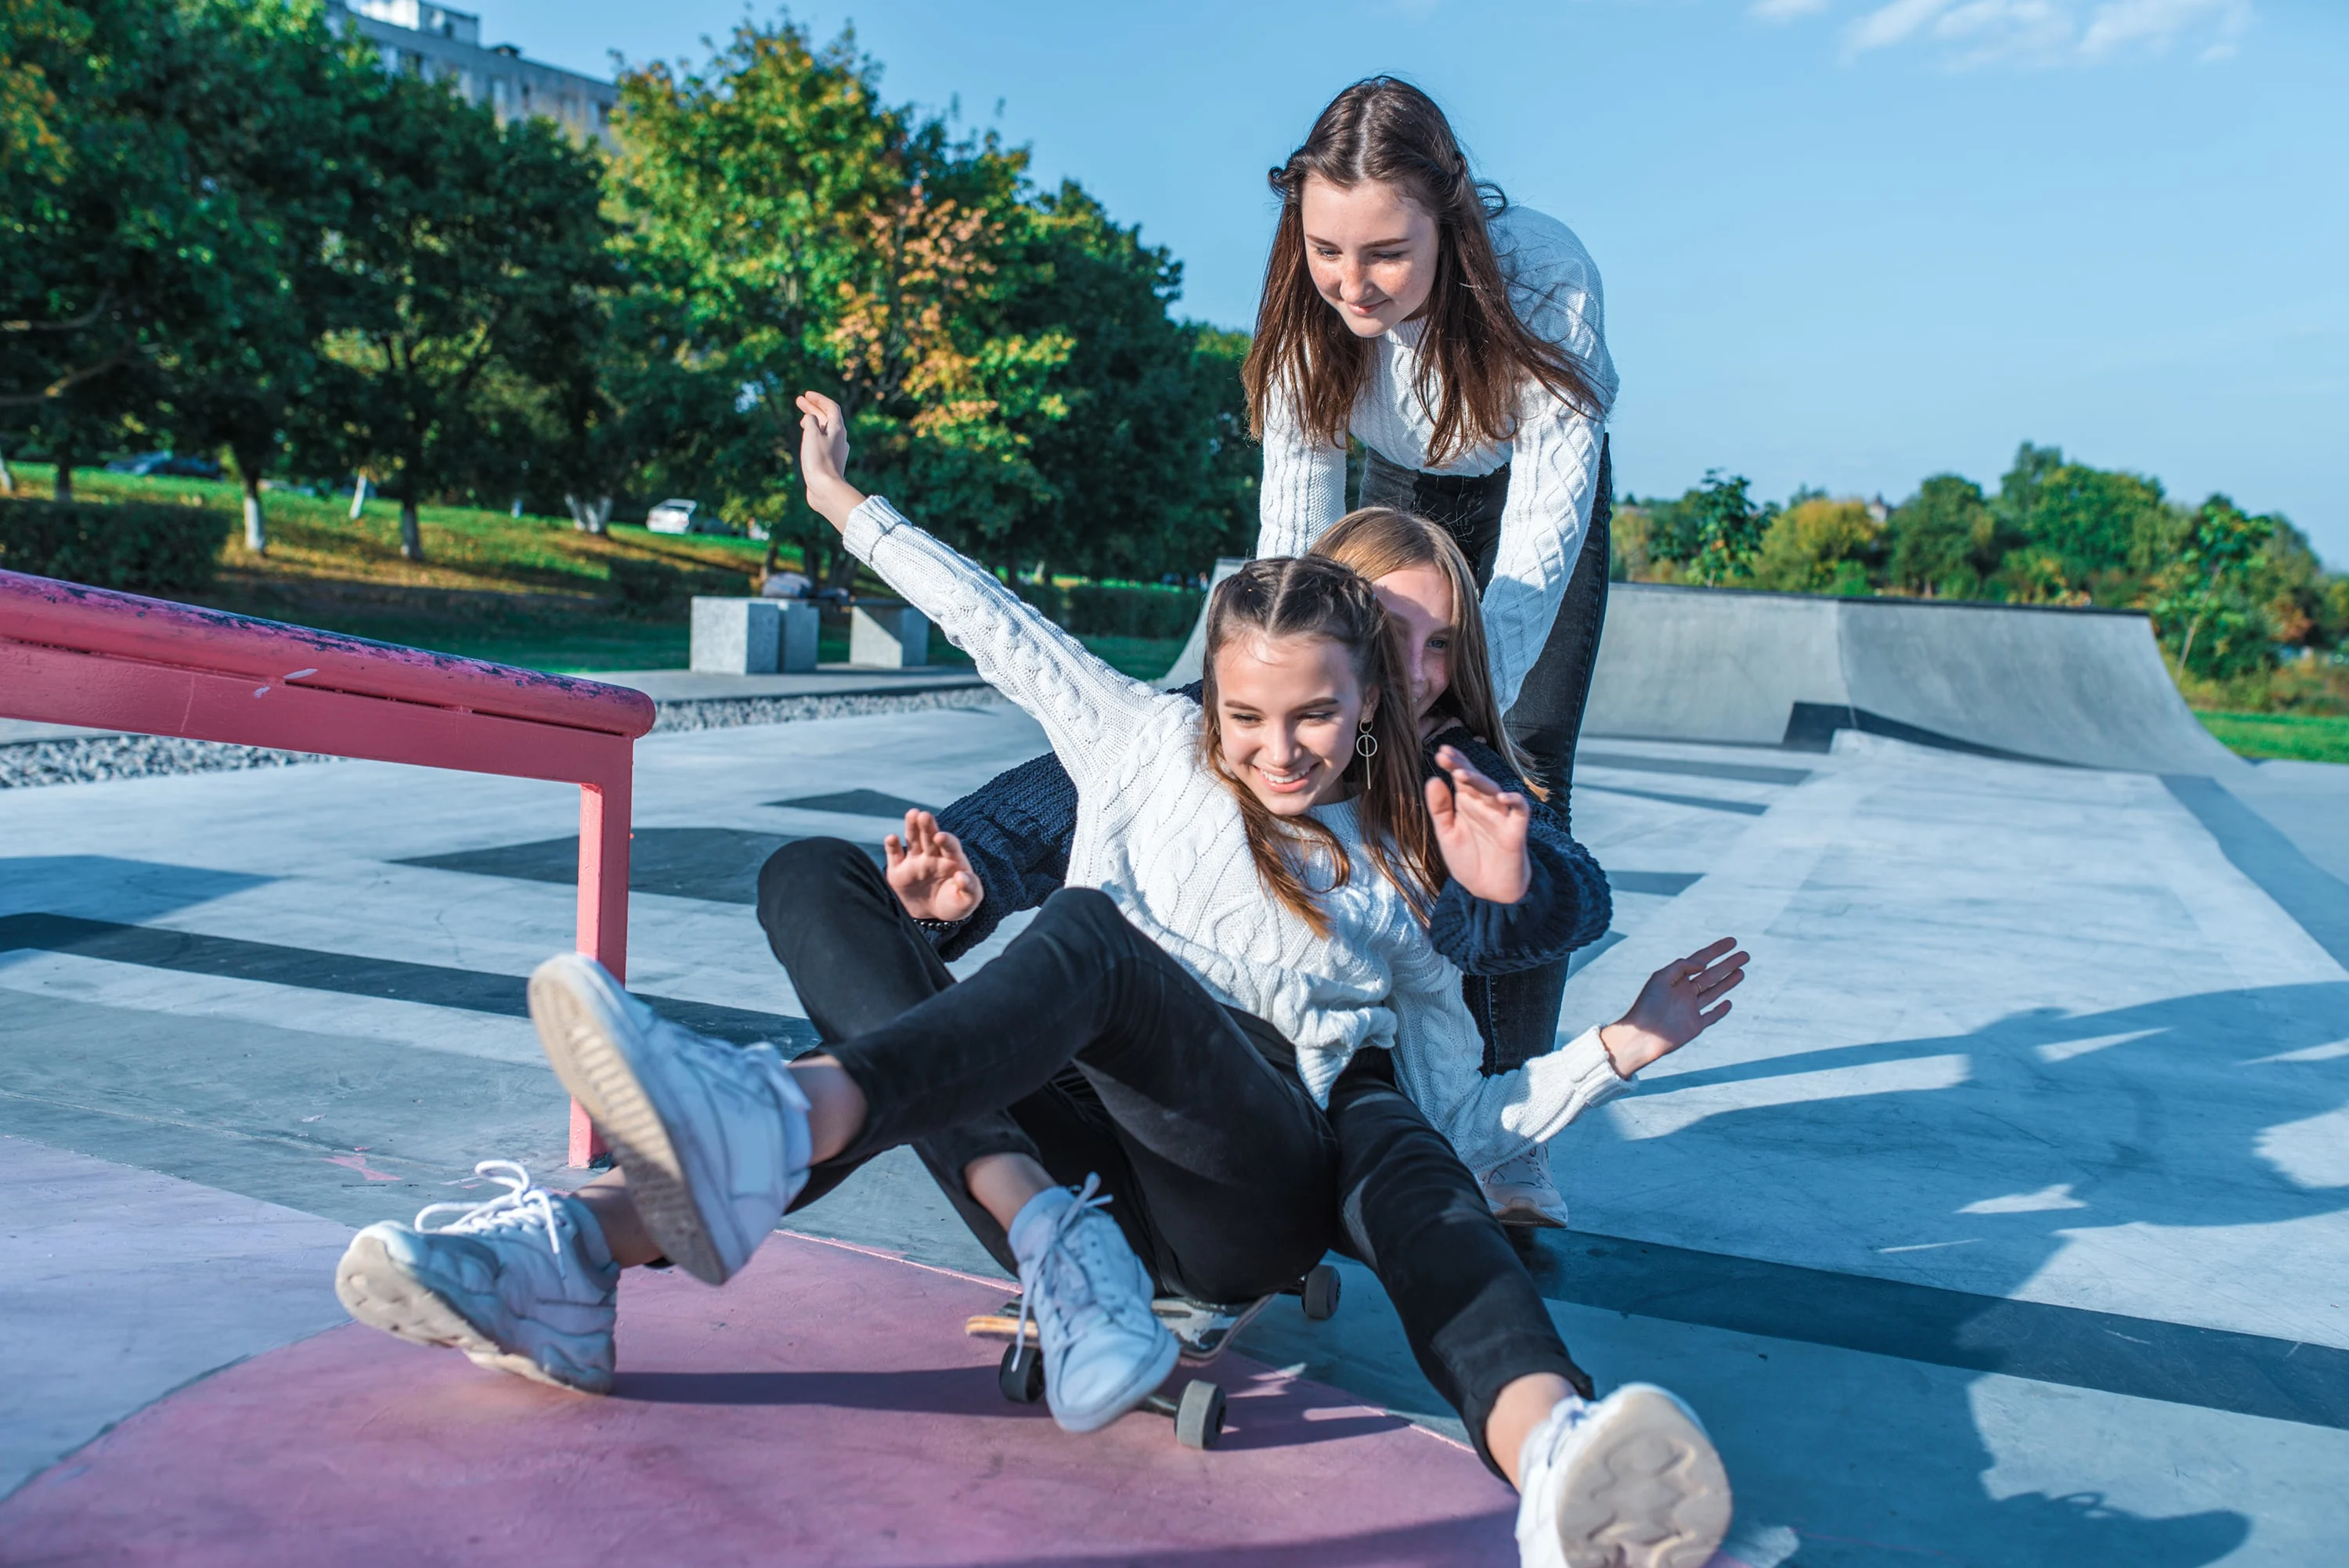 Three girls on a skateboard